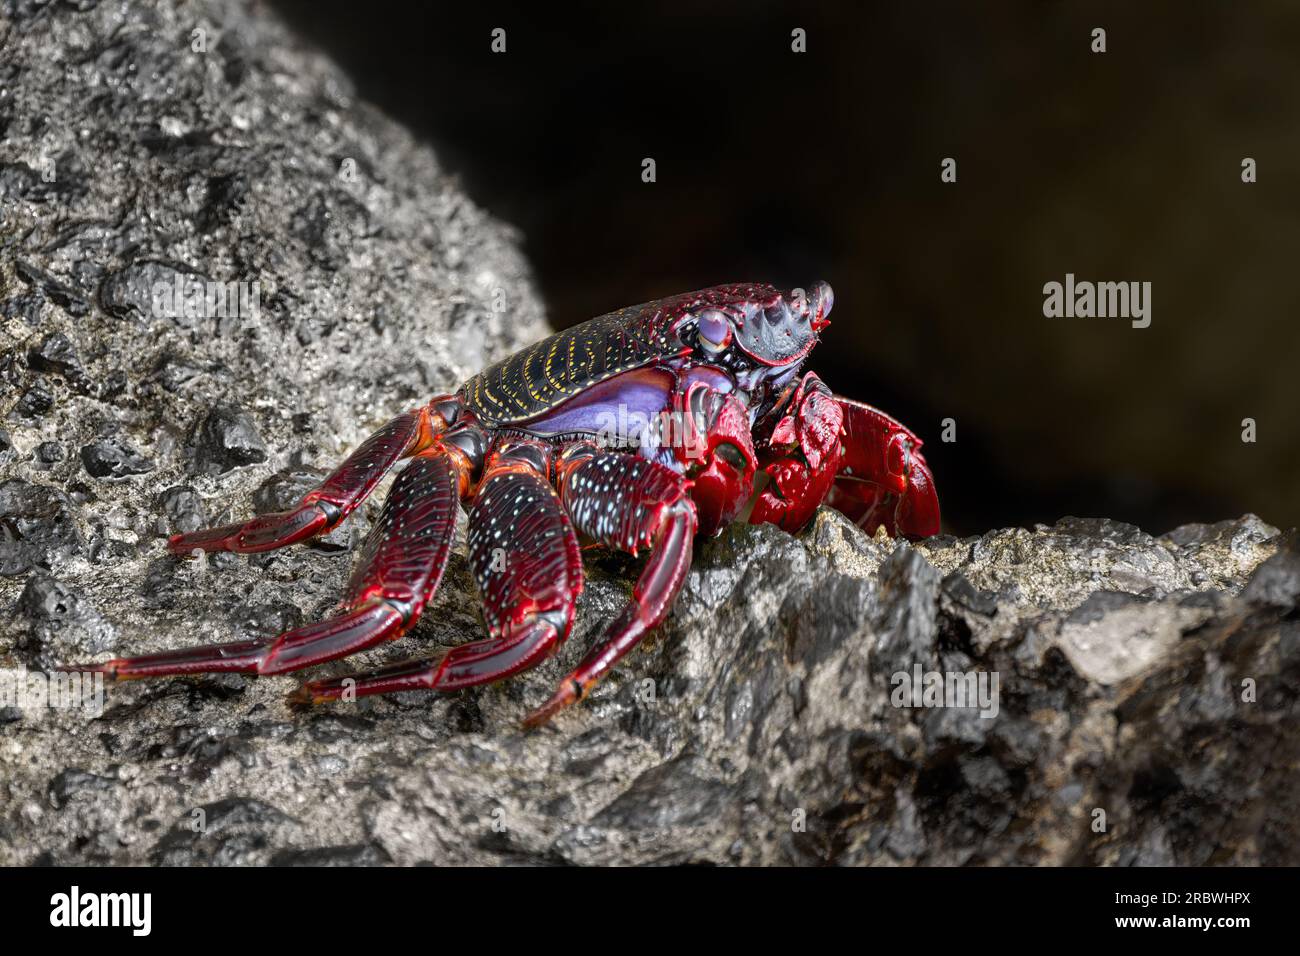 Crabe rouge de l'Atlantique (Grapsus adscensionis) crabe adulte de couleur rouge en vue latérale à Fuerteventura Banque D'Images